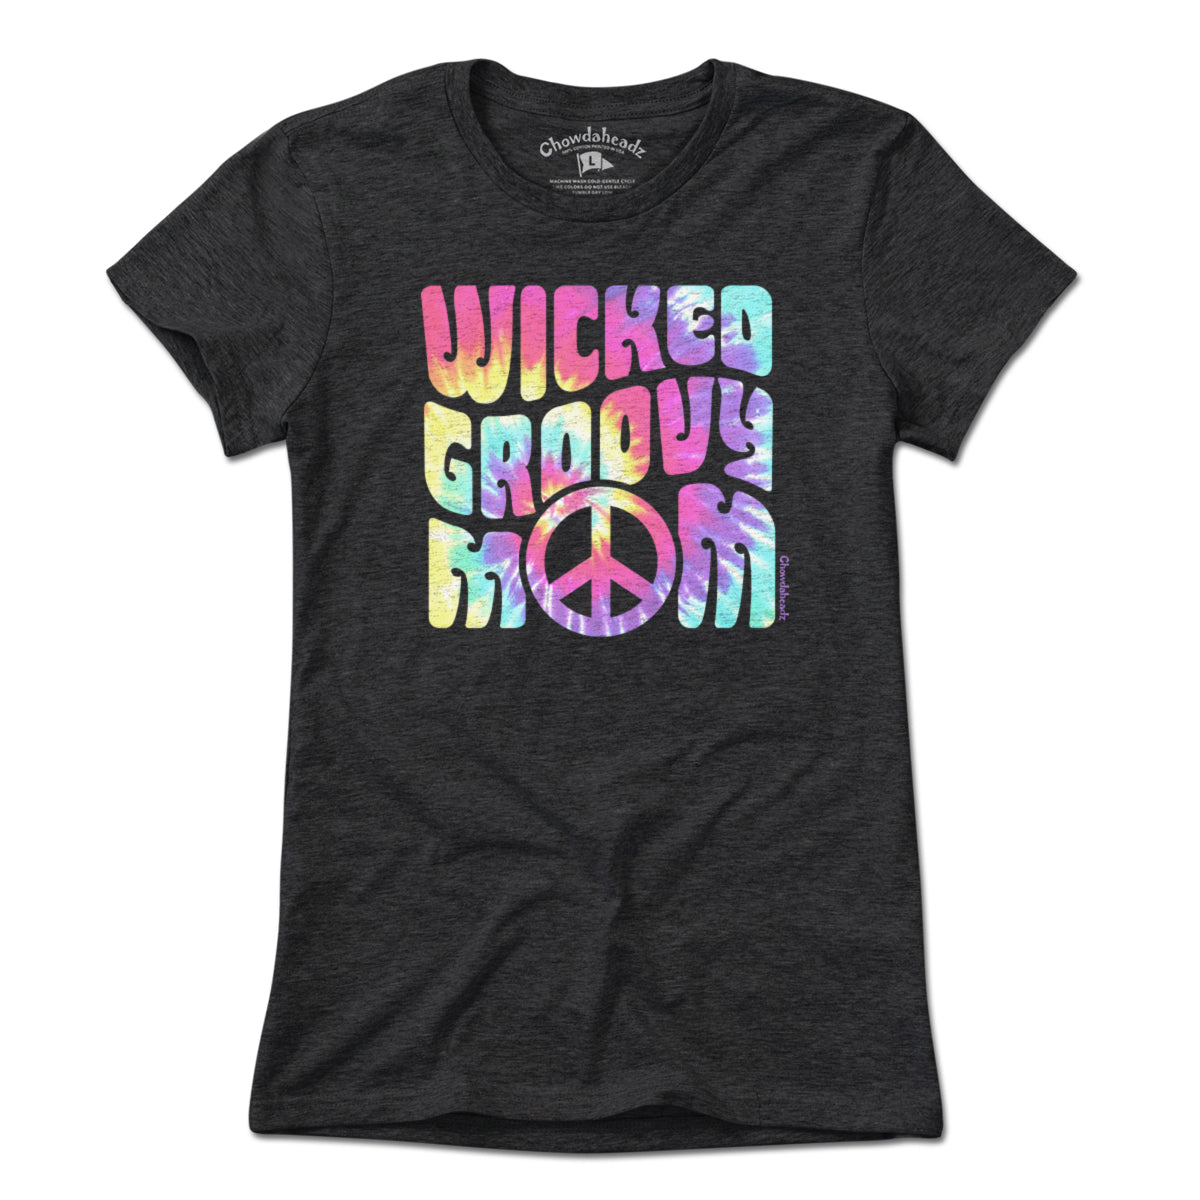 Wicked Groovy Mom T-Shirt - Chowdaheadz